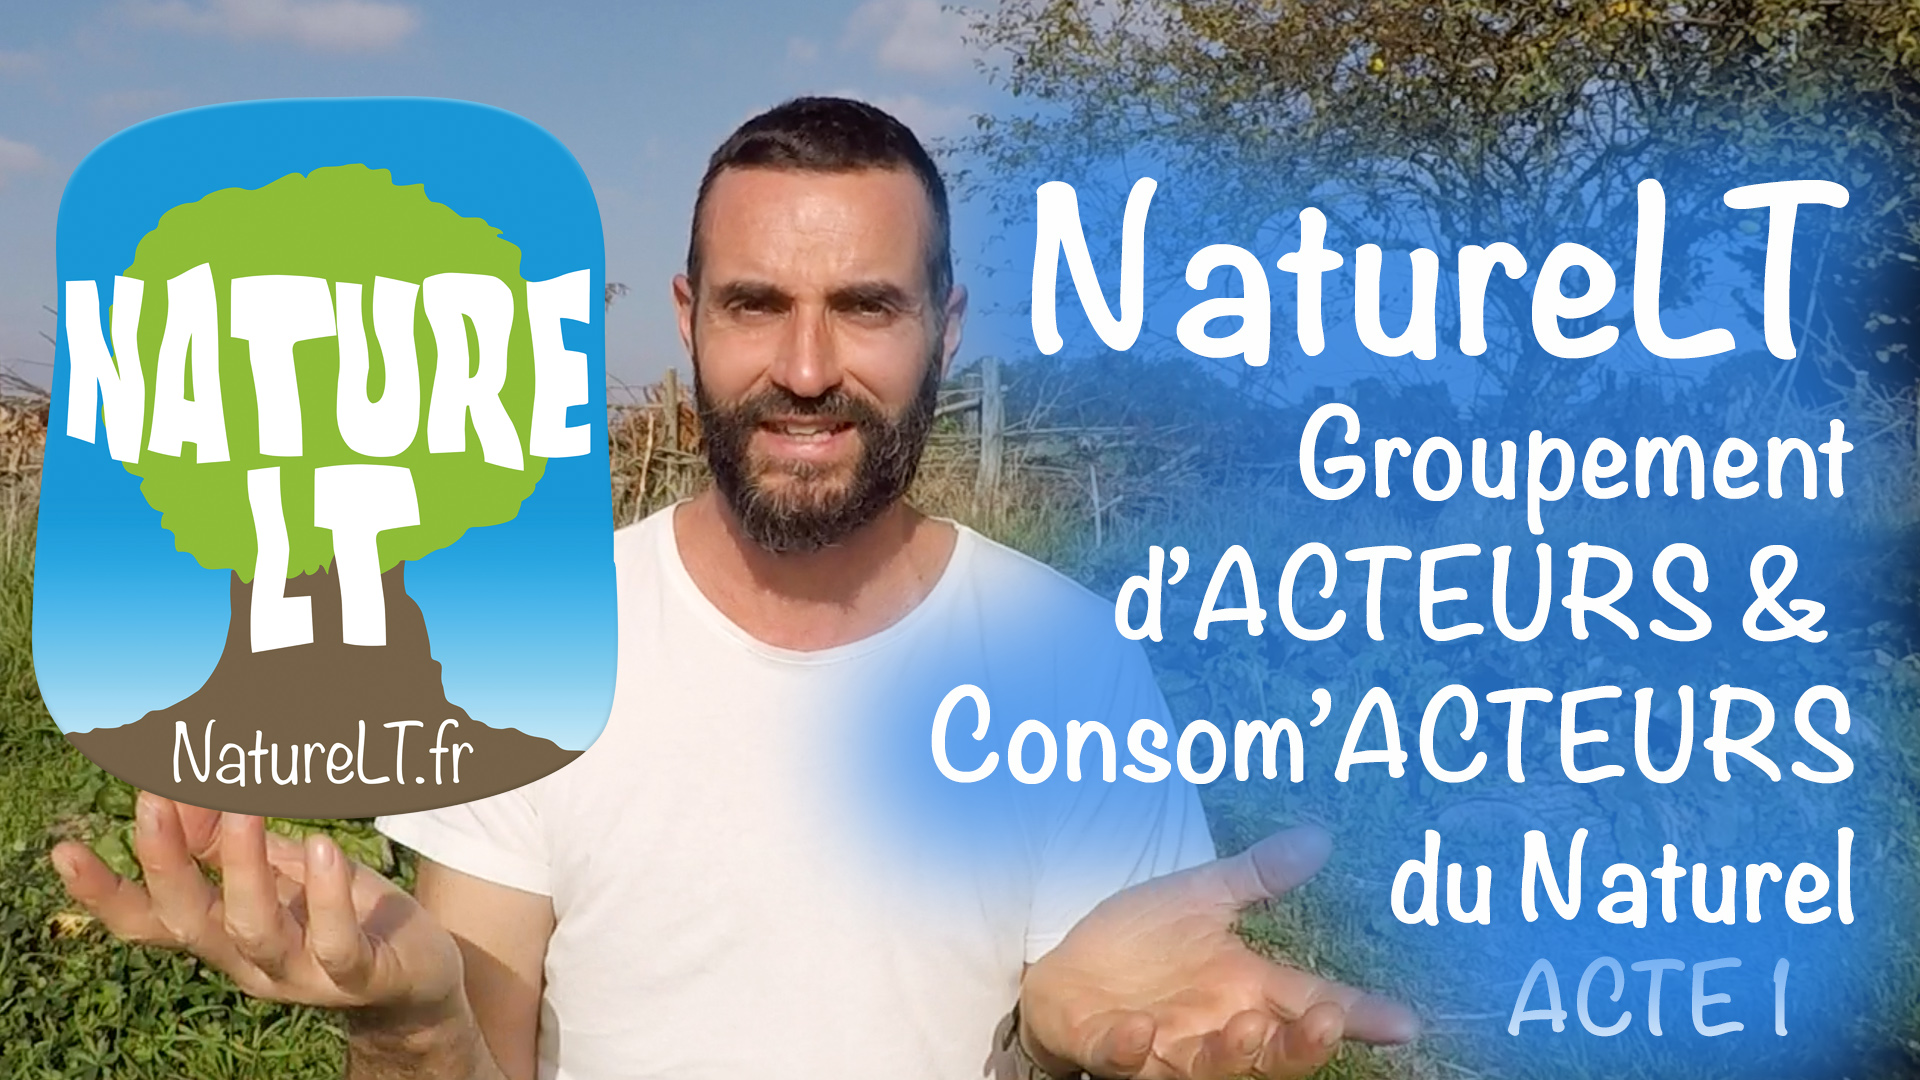 Lire la suite à propos de l’article NatureLT : Groupement d’Acteurs & Consom’Acteurs du Naturel, Acte 1